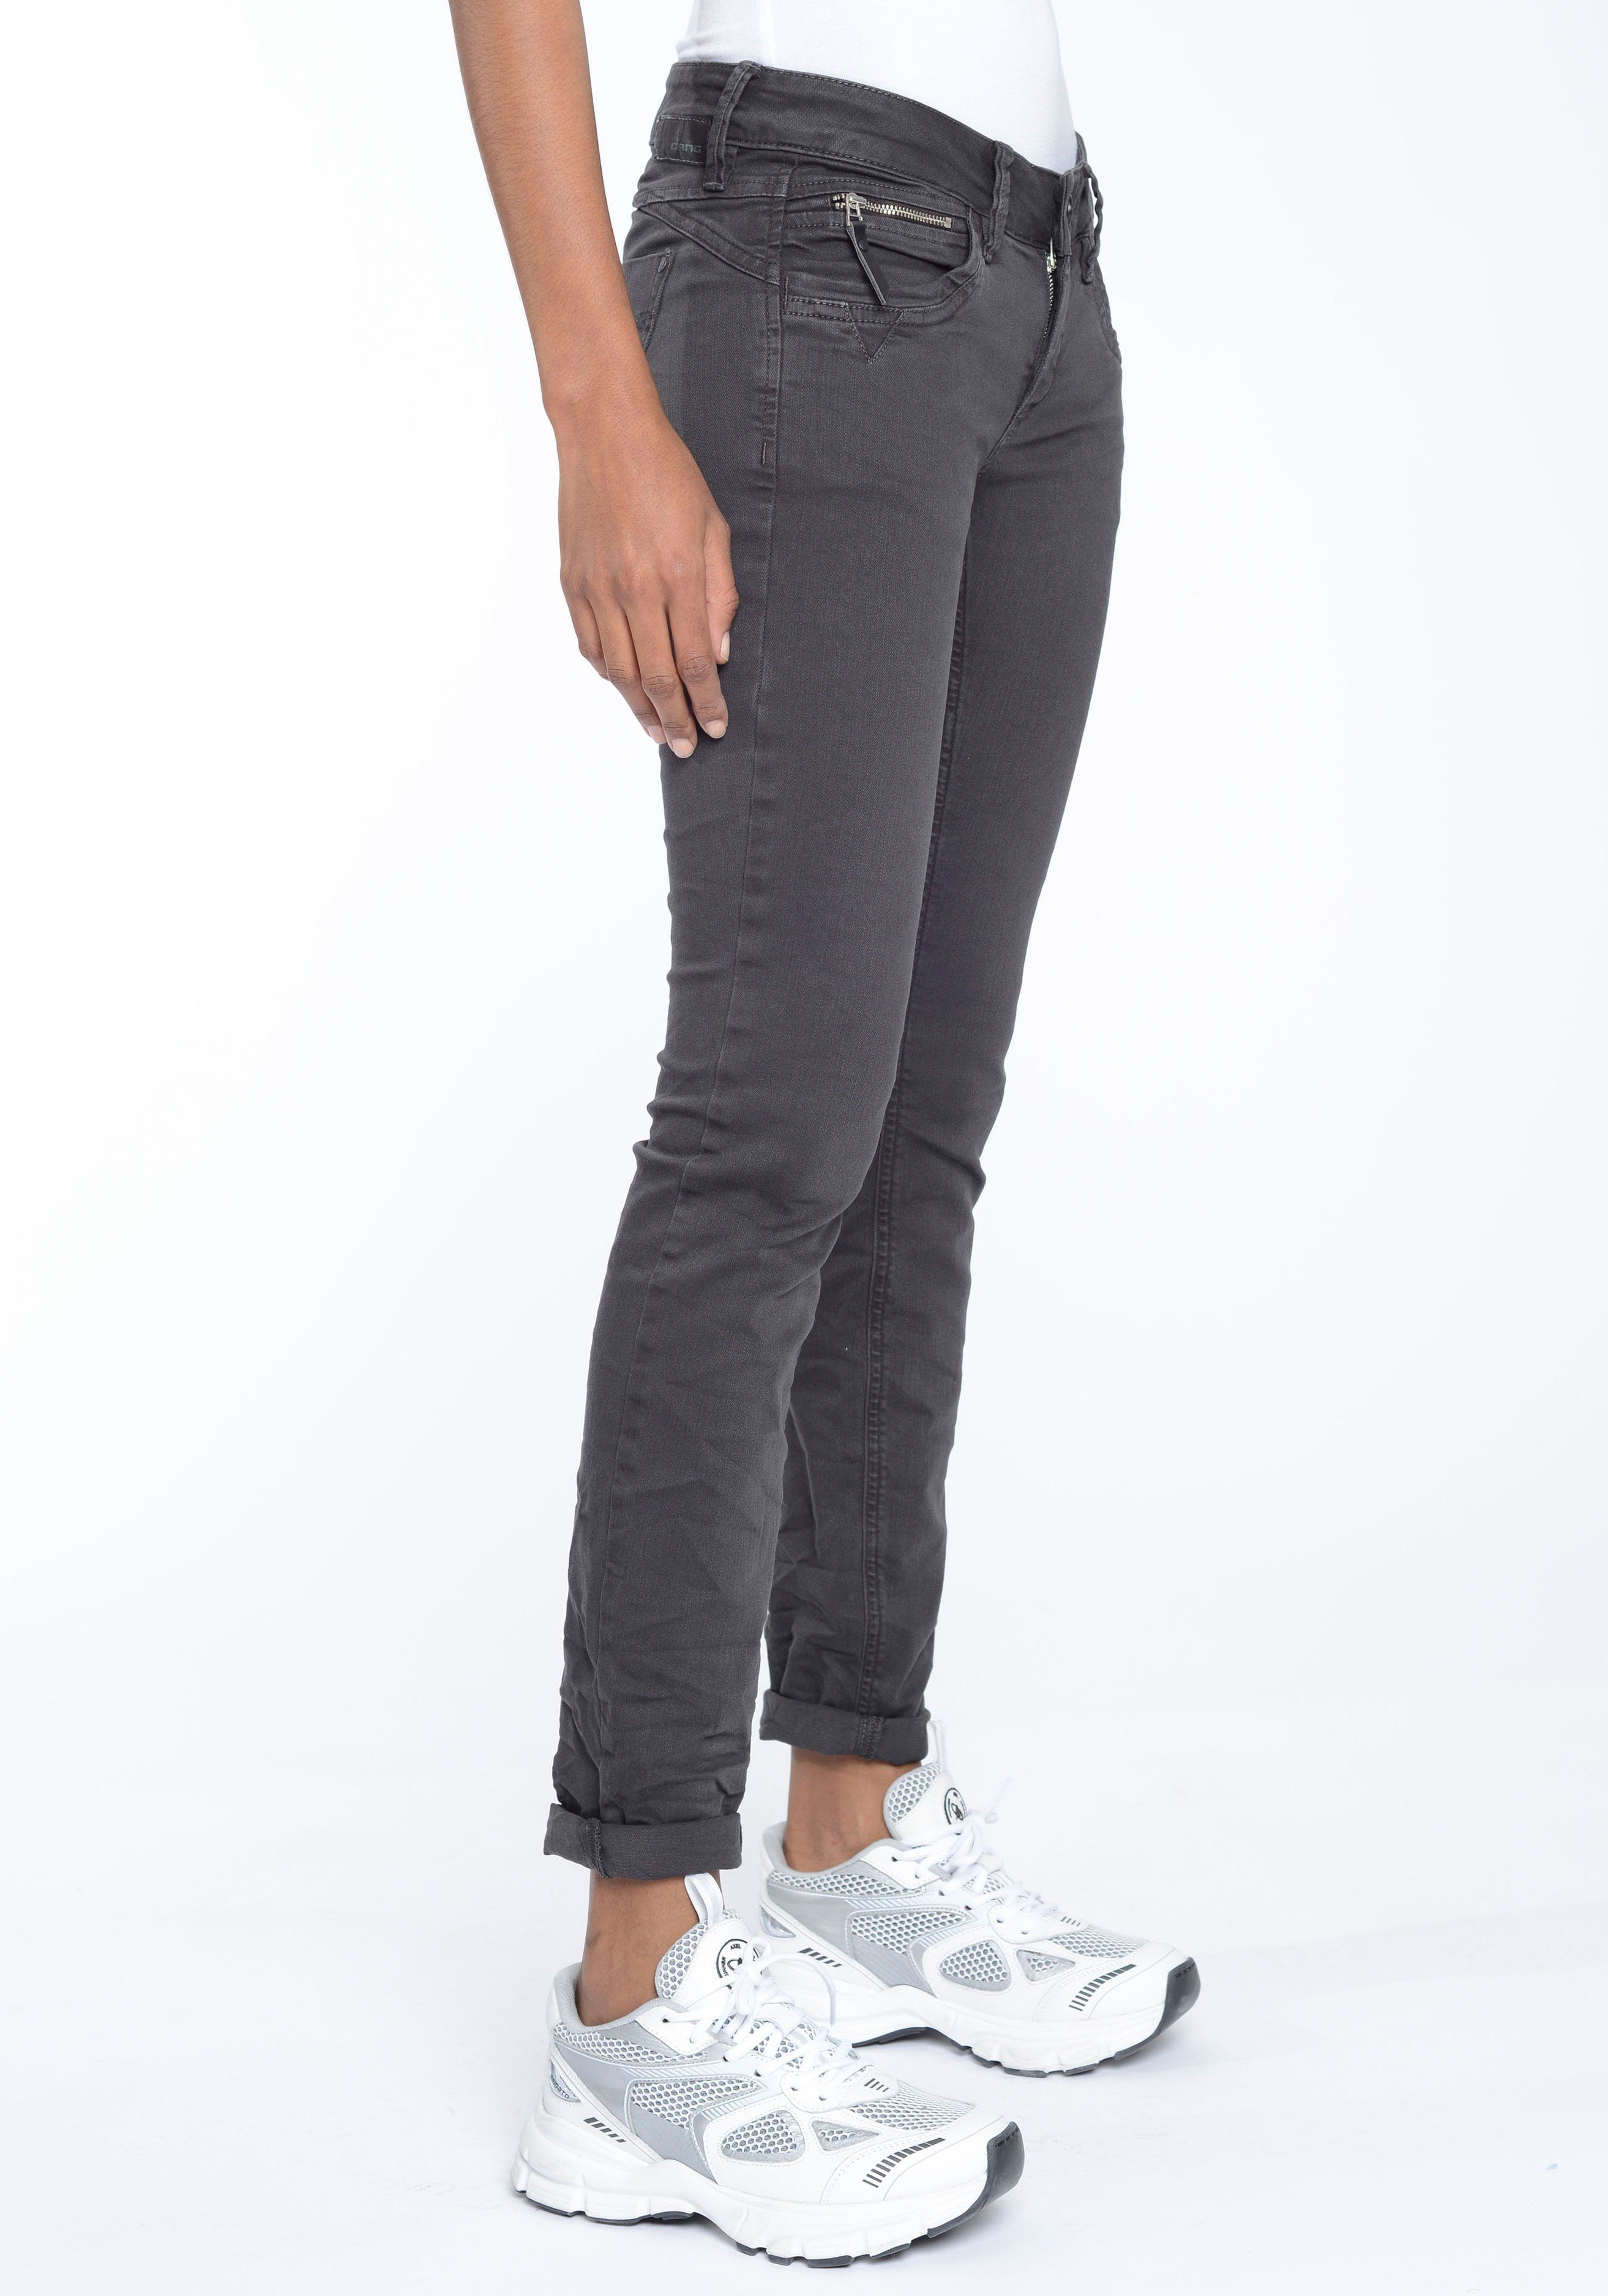 GANG durch Skinny-fit-Jeans Passform perfekte raven Stretch-Denim 94NIKITA